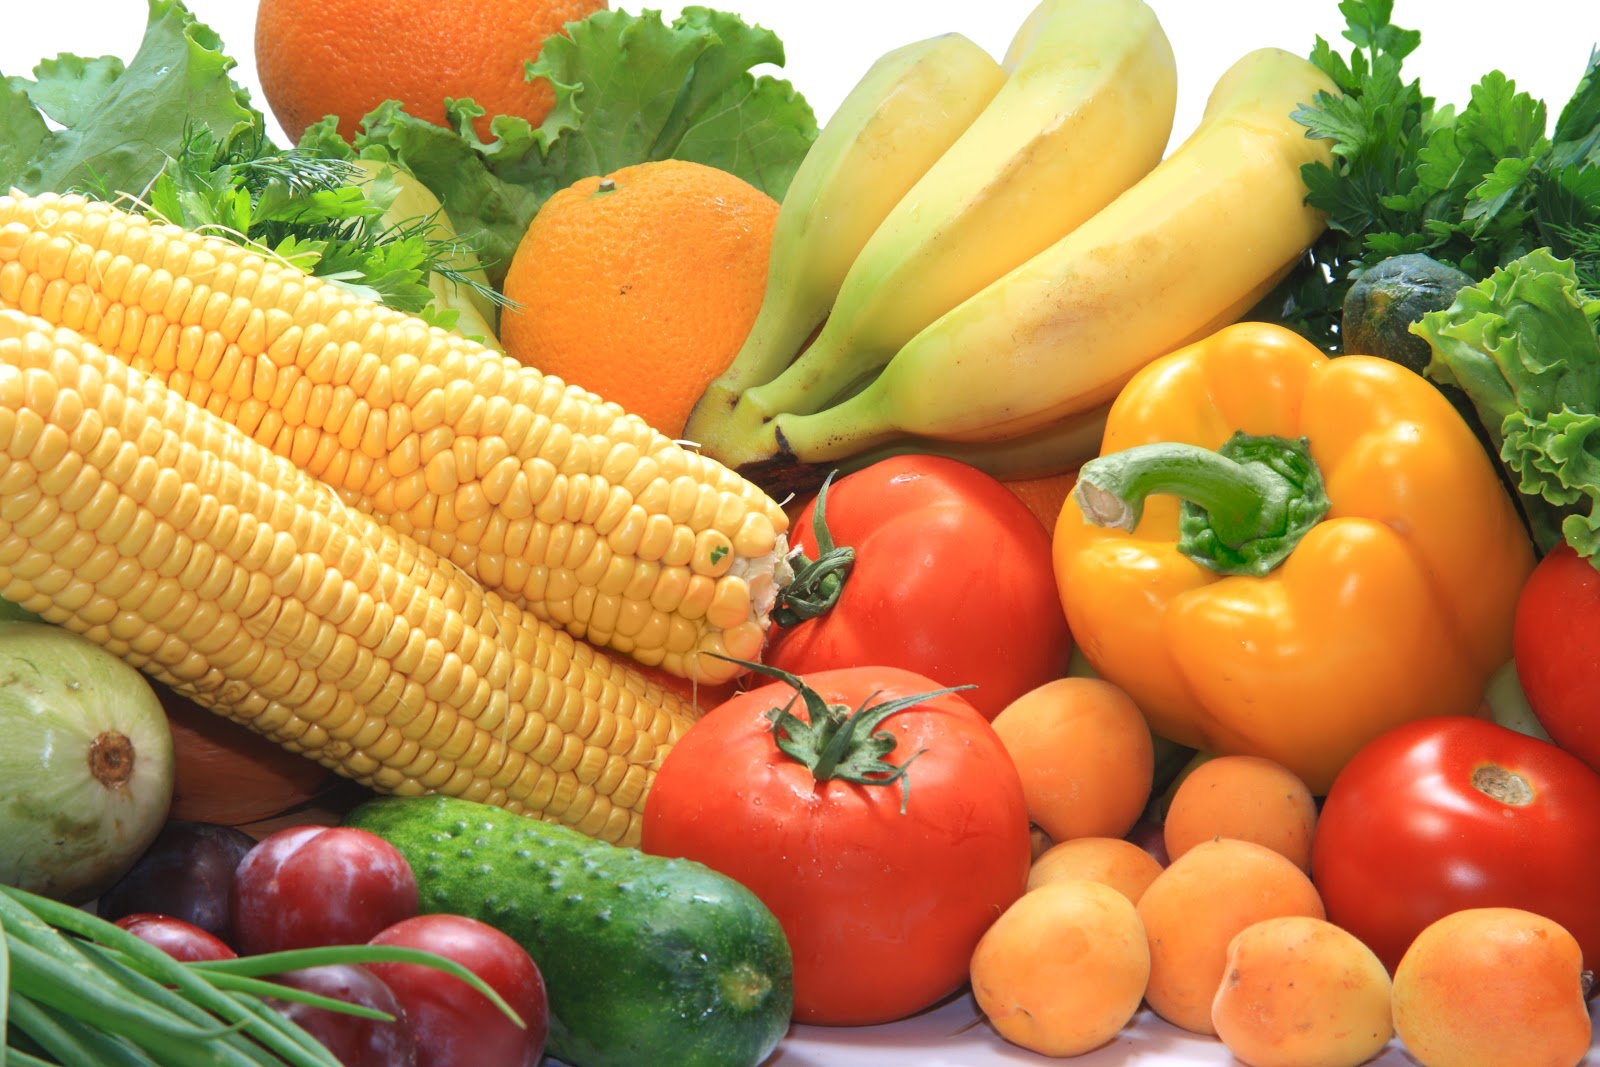 Vegetable products. Овощи и фрукты. Овощи фото. Свежие овощи и фрукты. Сочные овощи.